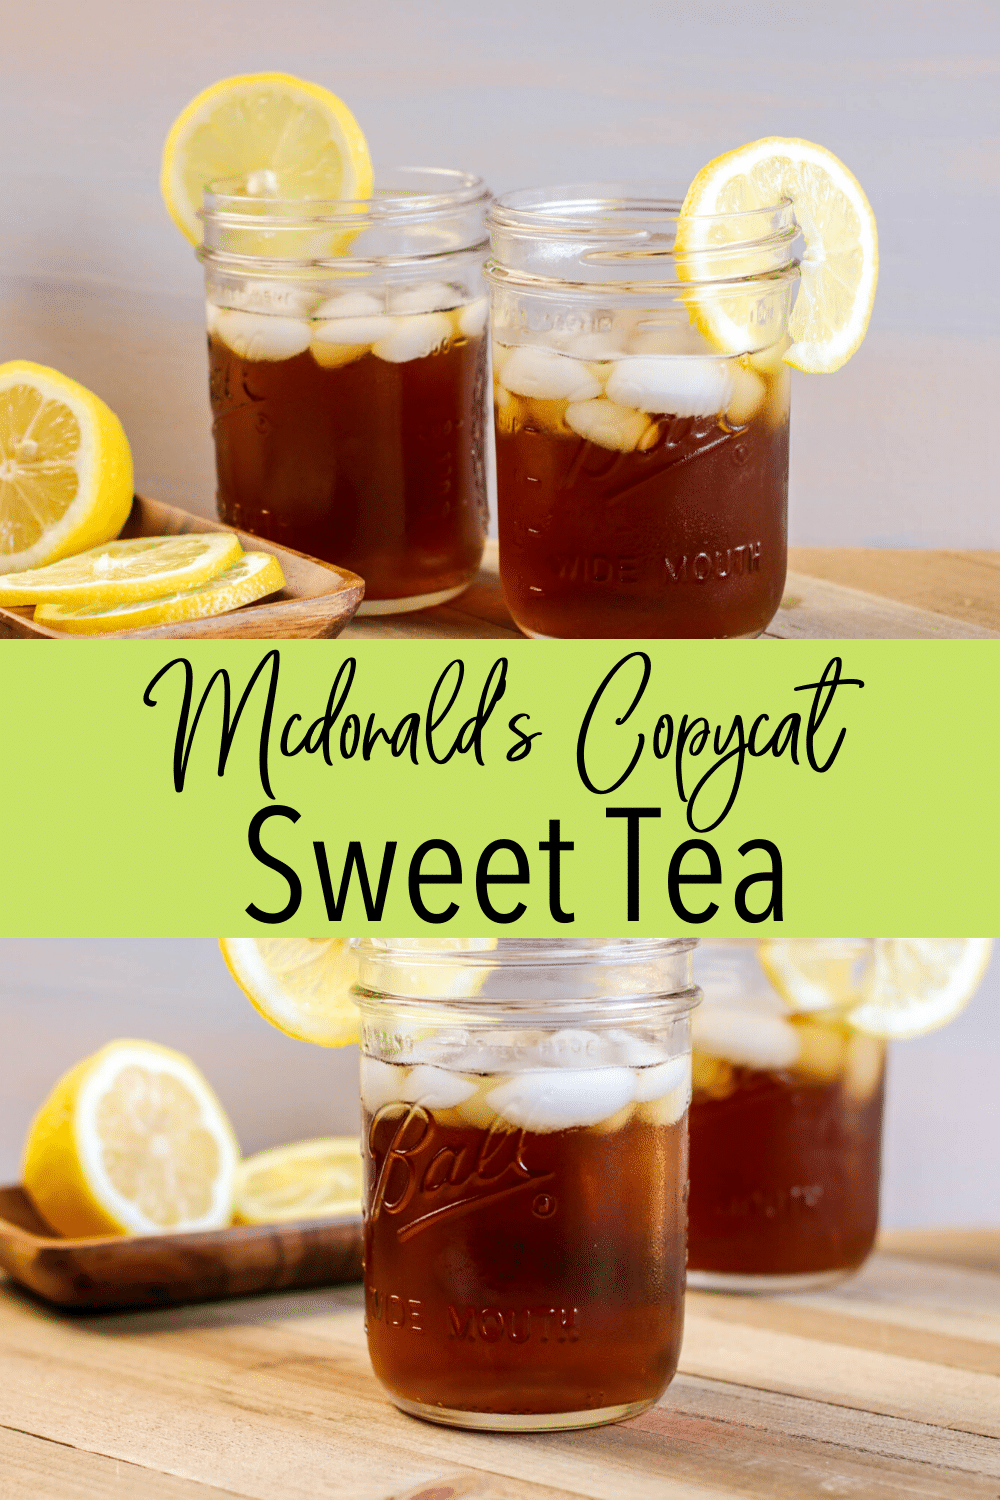 McDonald's Copycat Sweet Tea